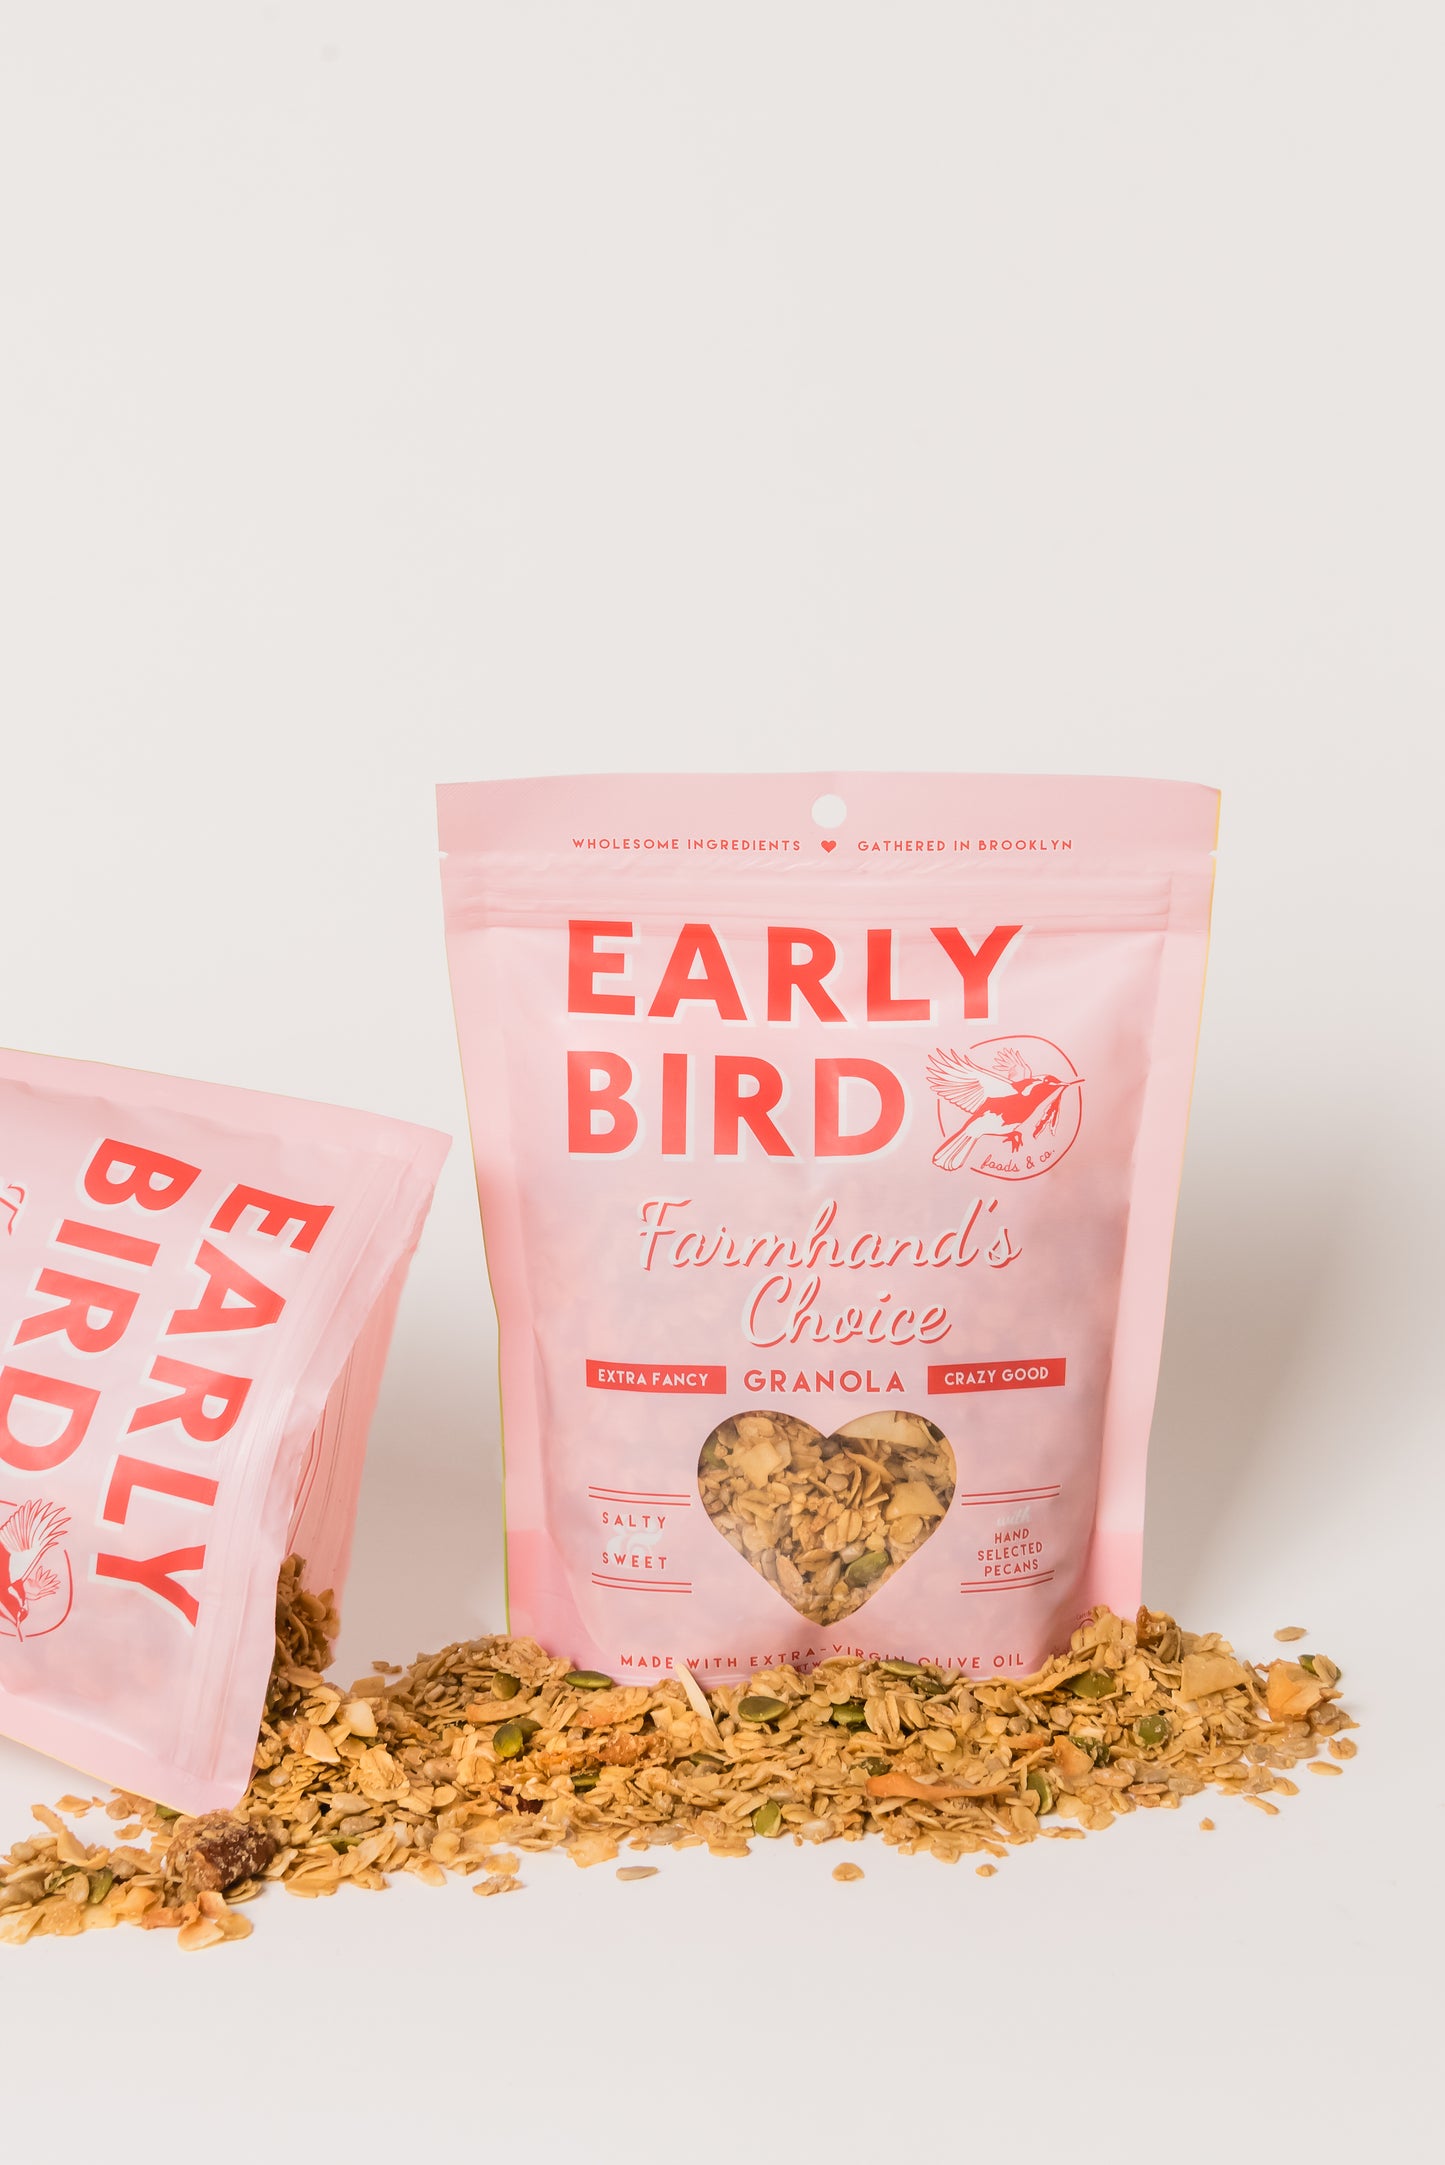 FARMHAND'S CHOICE - Early Bird Foods & Co.